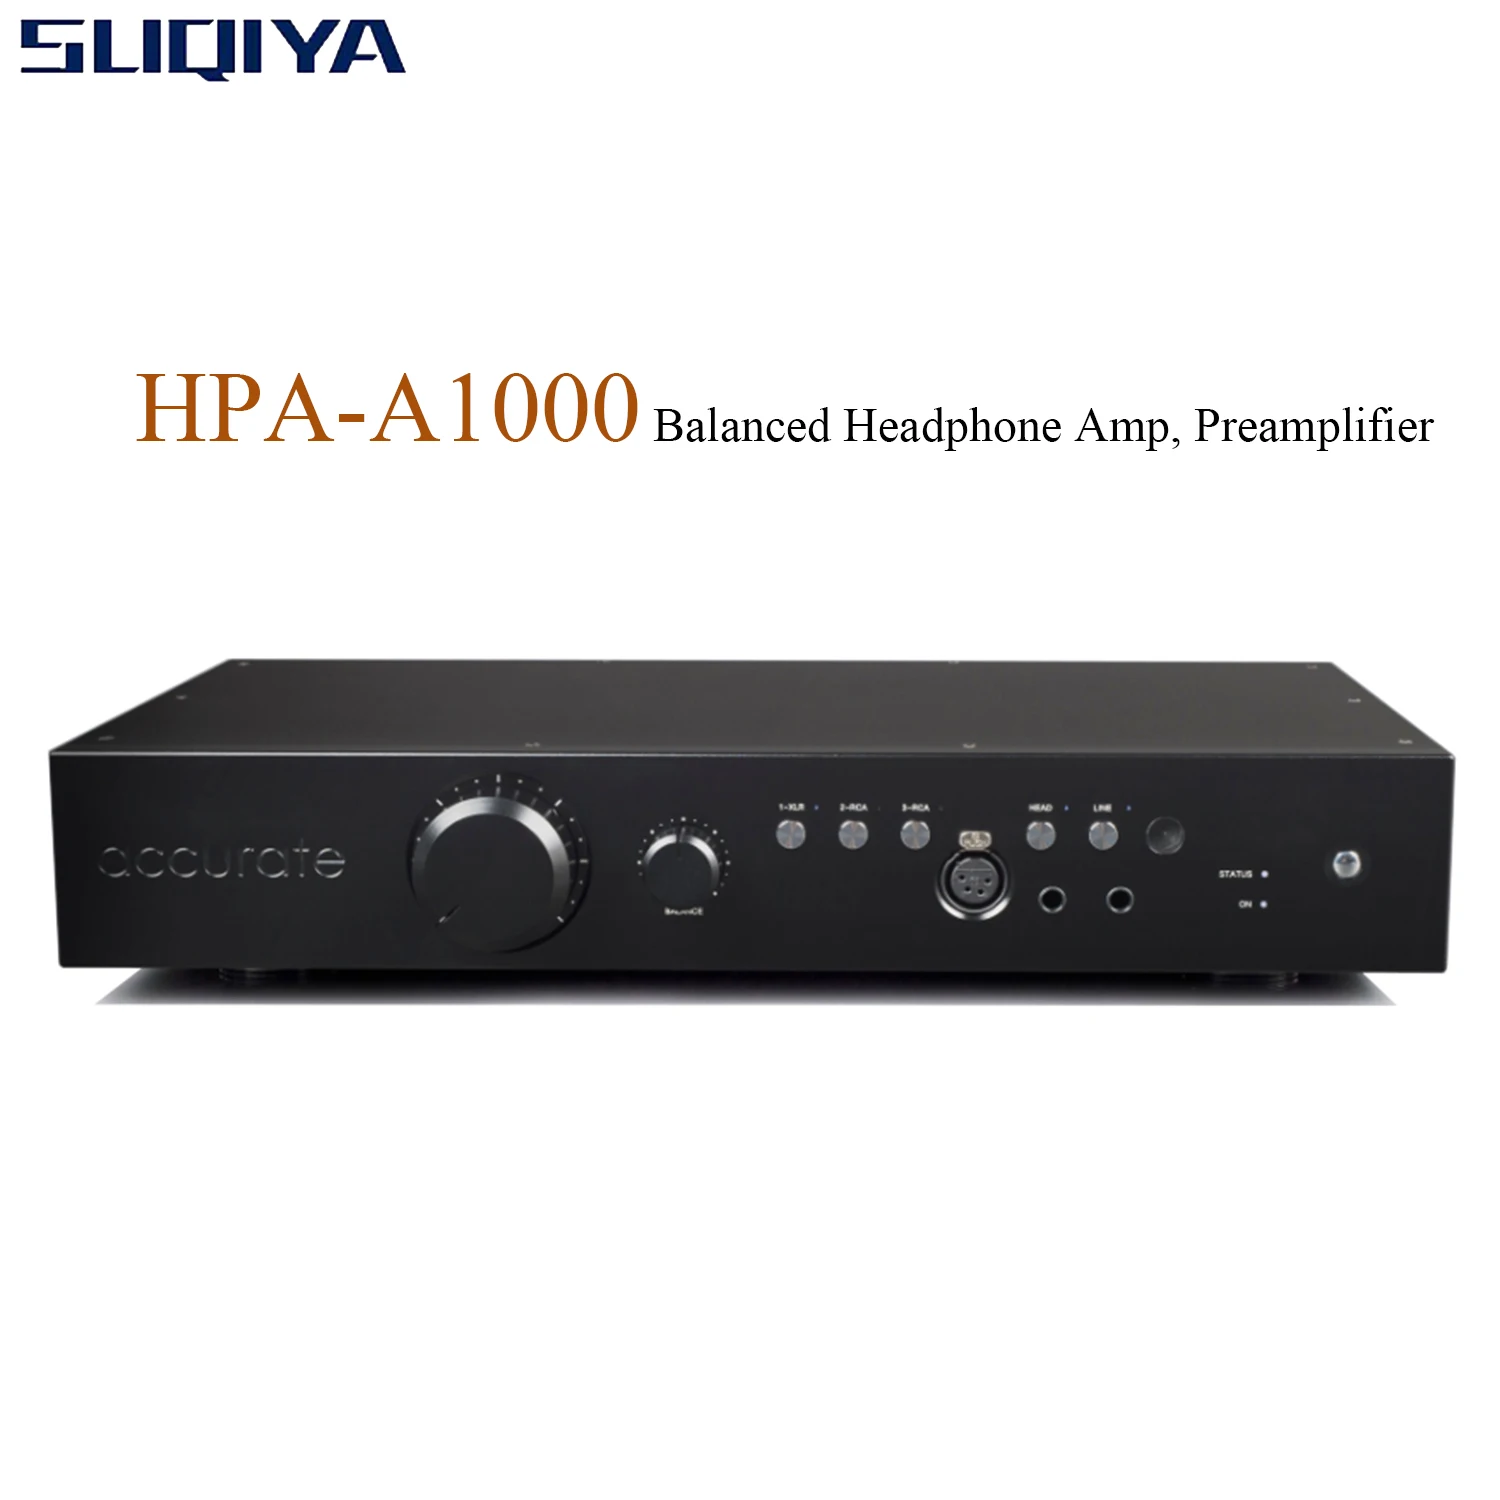 SUQIYA-جديد HPA-A1000 مكبر للصوت متوازن ، ديناميكية ، لوحة مسطحة العالمي مضخم ضوت سماعات الأذن ، حساسية الإدخال: + 6 dBu